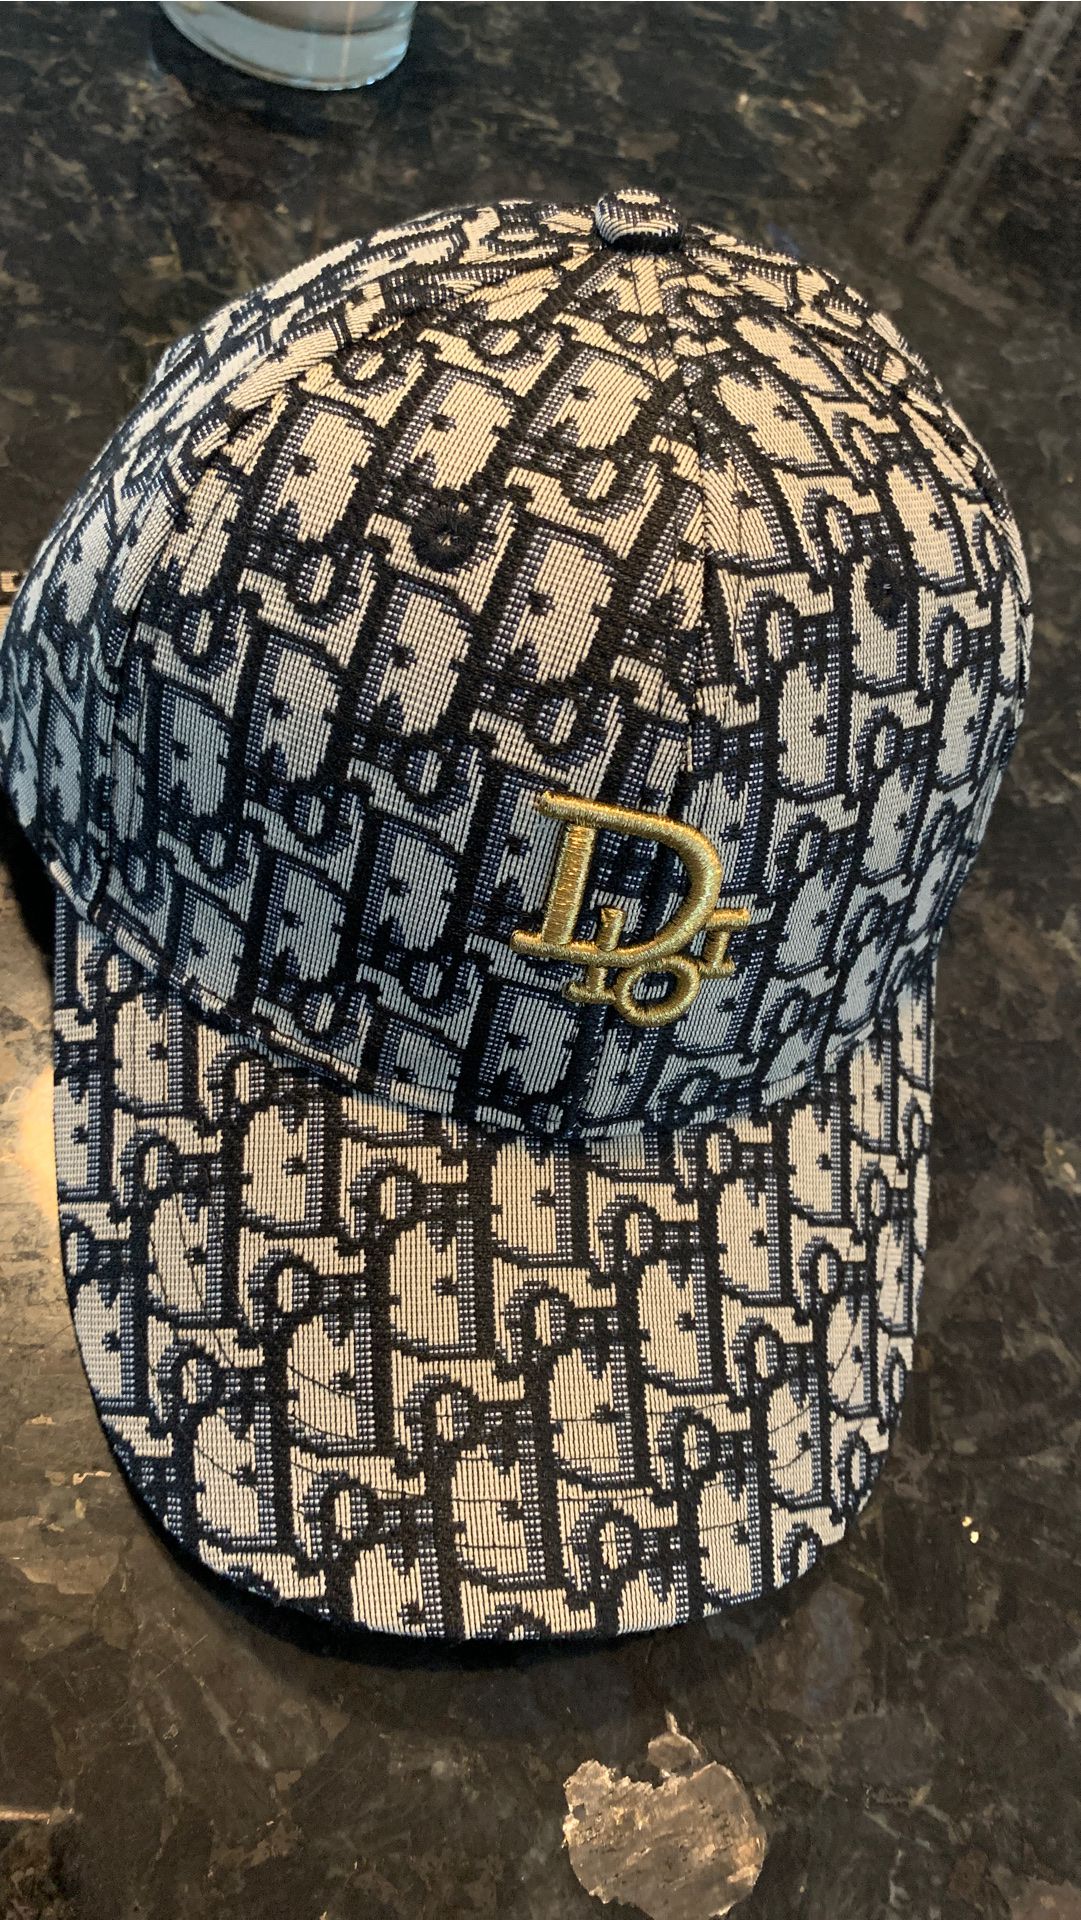 Dior hat